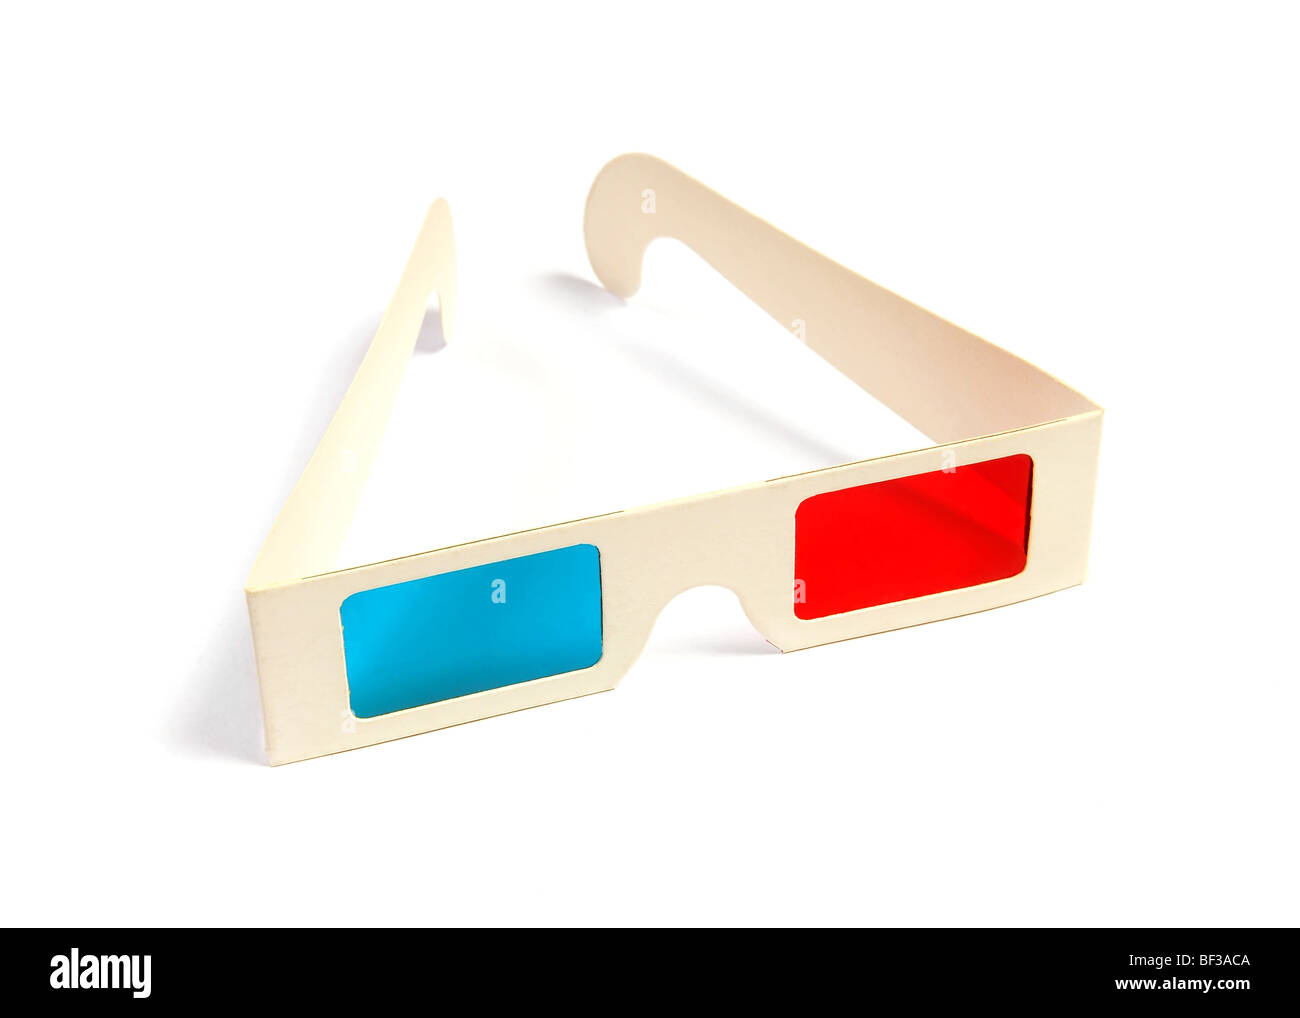 Cine gafas estéreo con ojos azul y rojo aislado en blanco Foto de stock